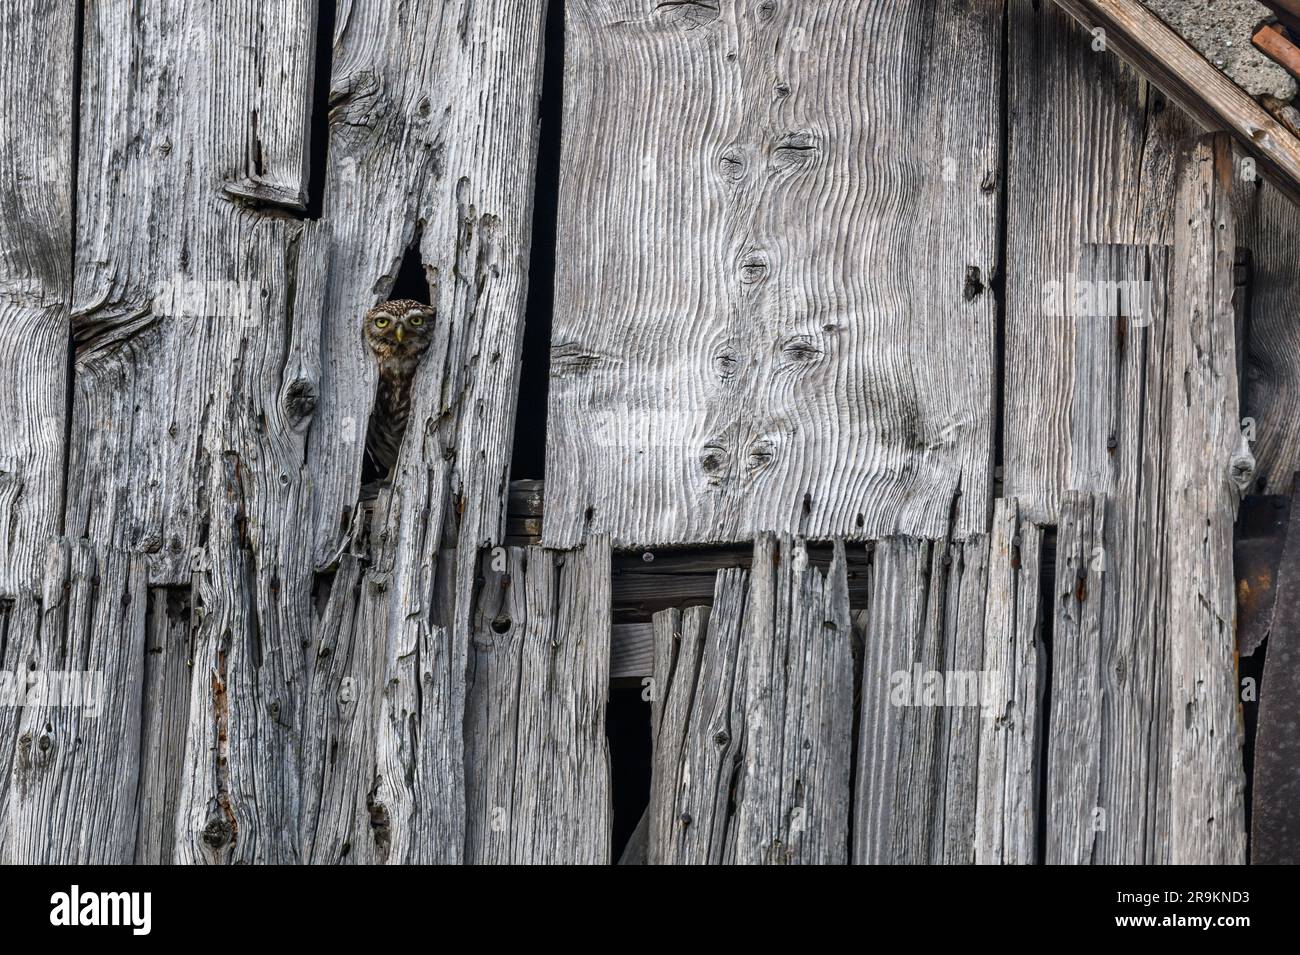 Little Owl (Athene noctua) dans une grange donnant sur. Bas-Rhin, Collectivite europeenne d'Alsace, Grand est, France. Banque D'Images